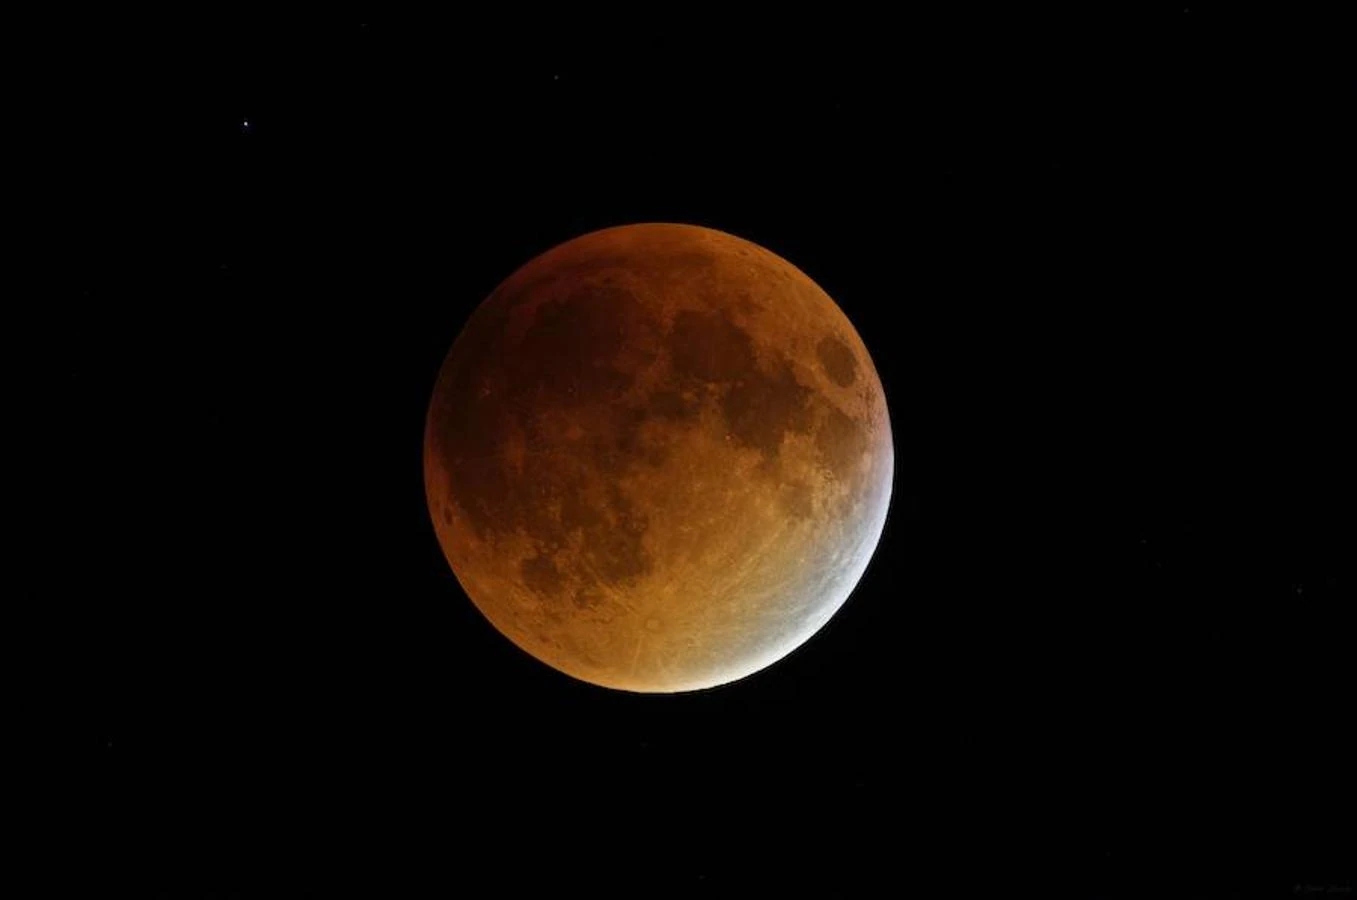 La luna atravesará la sombra que proyecta la Tierra y ya que la luz solar le llegará más débil y se refractará en la atmósfera, el satélite cogerá un tono rojo-anaranjado